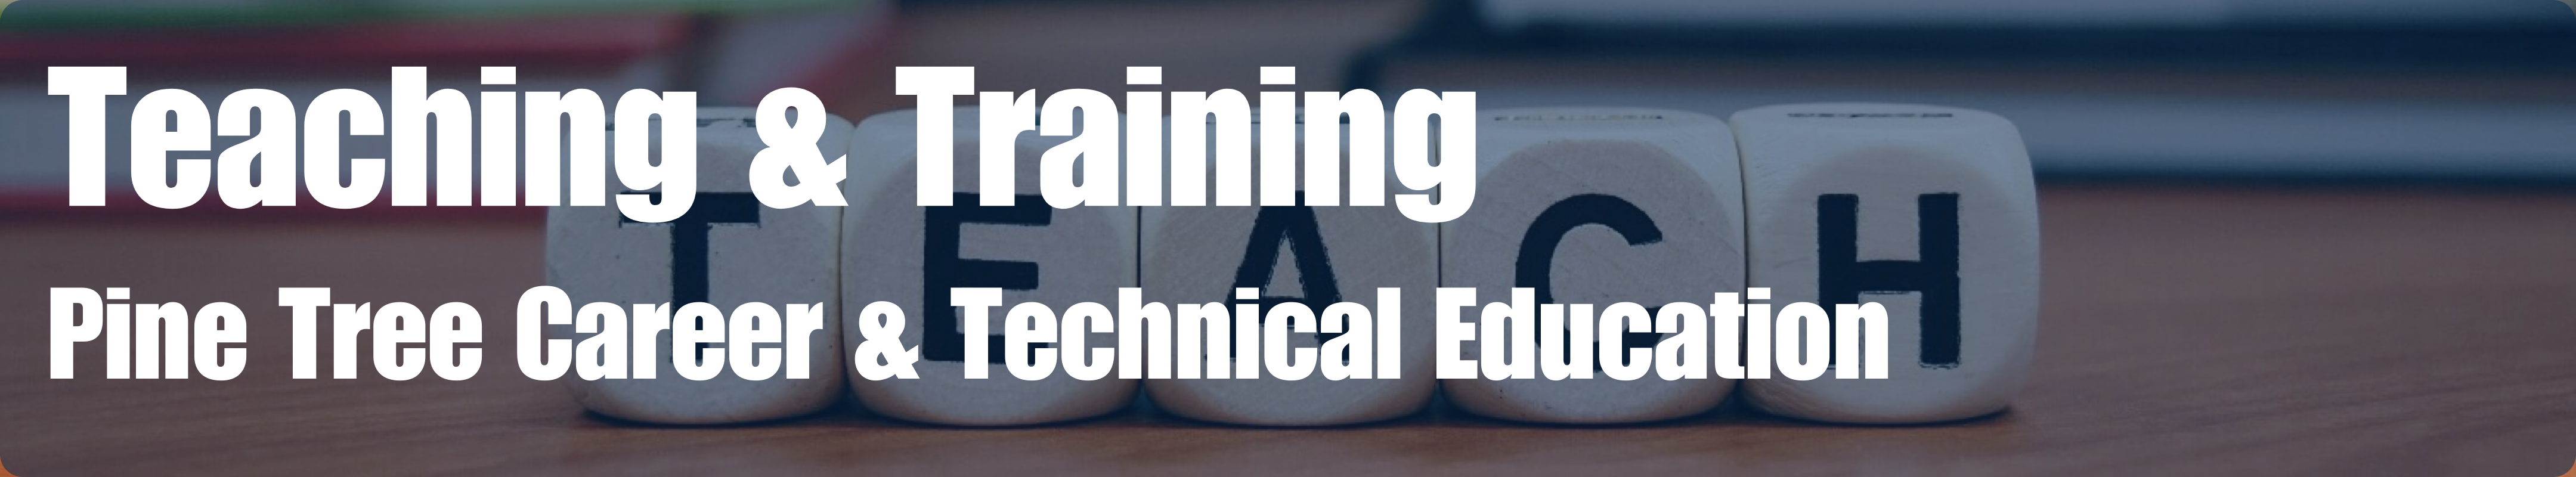 Pine Tree CTE: Teaching & Training